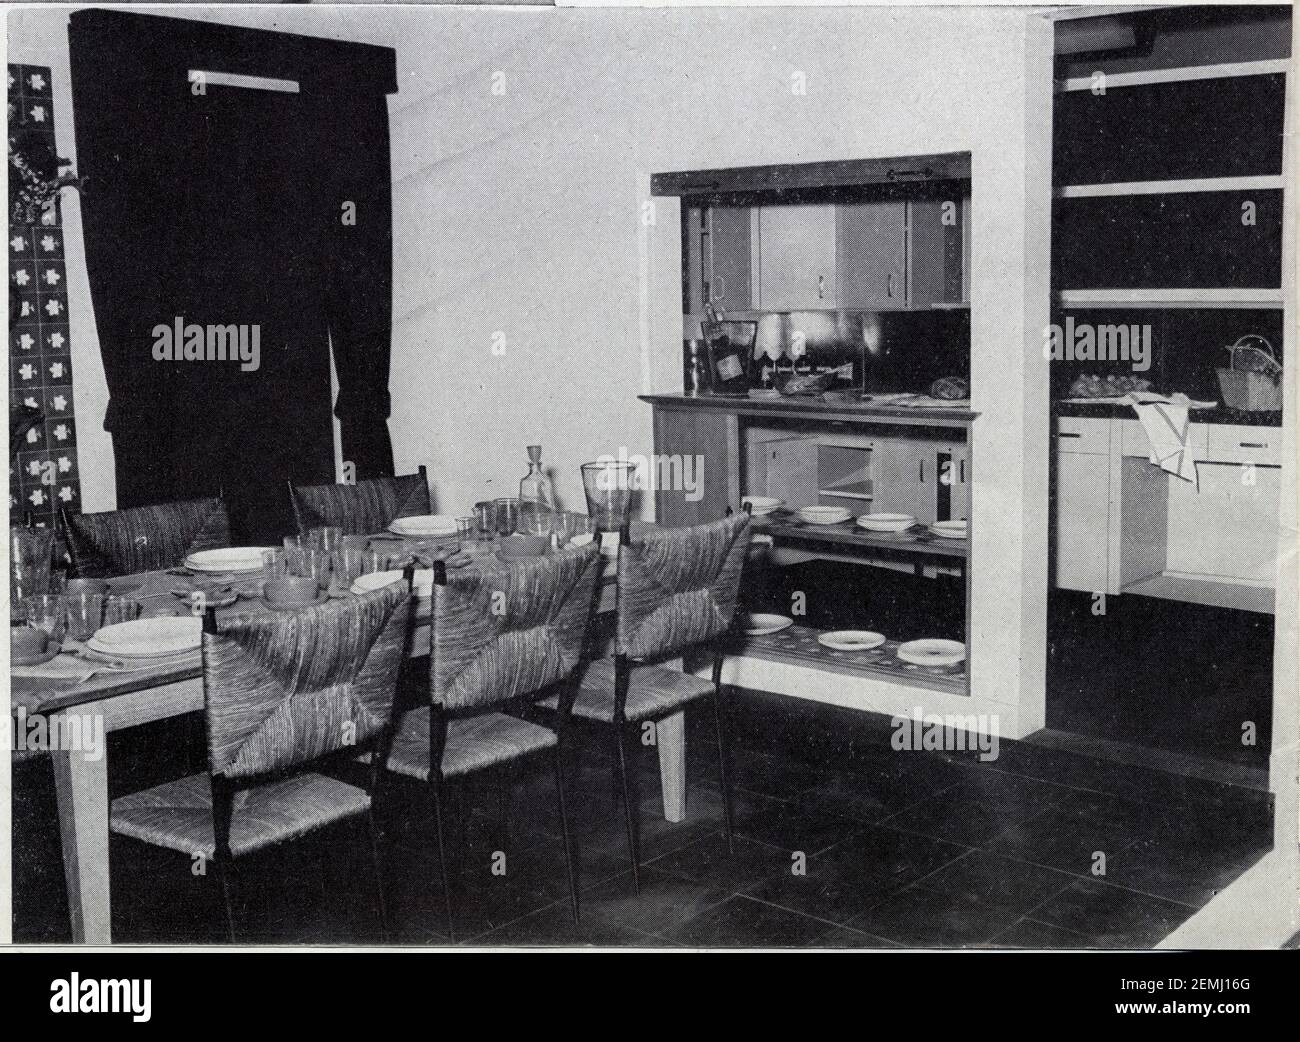 Table en chêne, chaises en fer forgé, paille verte, sol ardoises, cuisine  avec mobilier Cepac. Création de Colette Gueden Stock Photo - Alamy